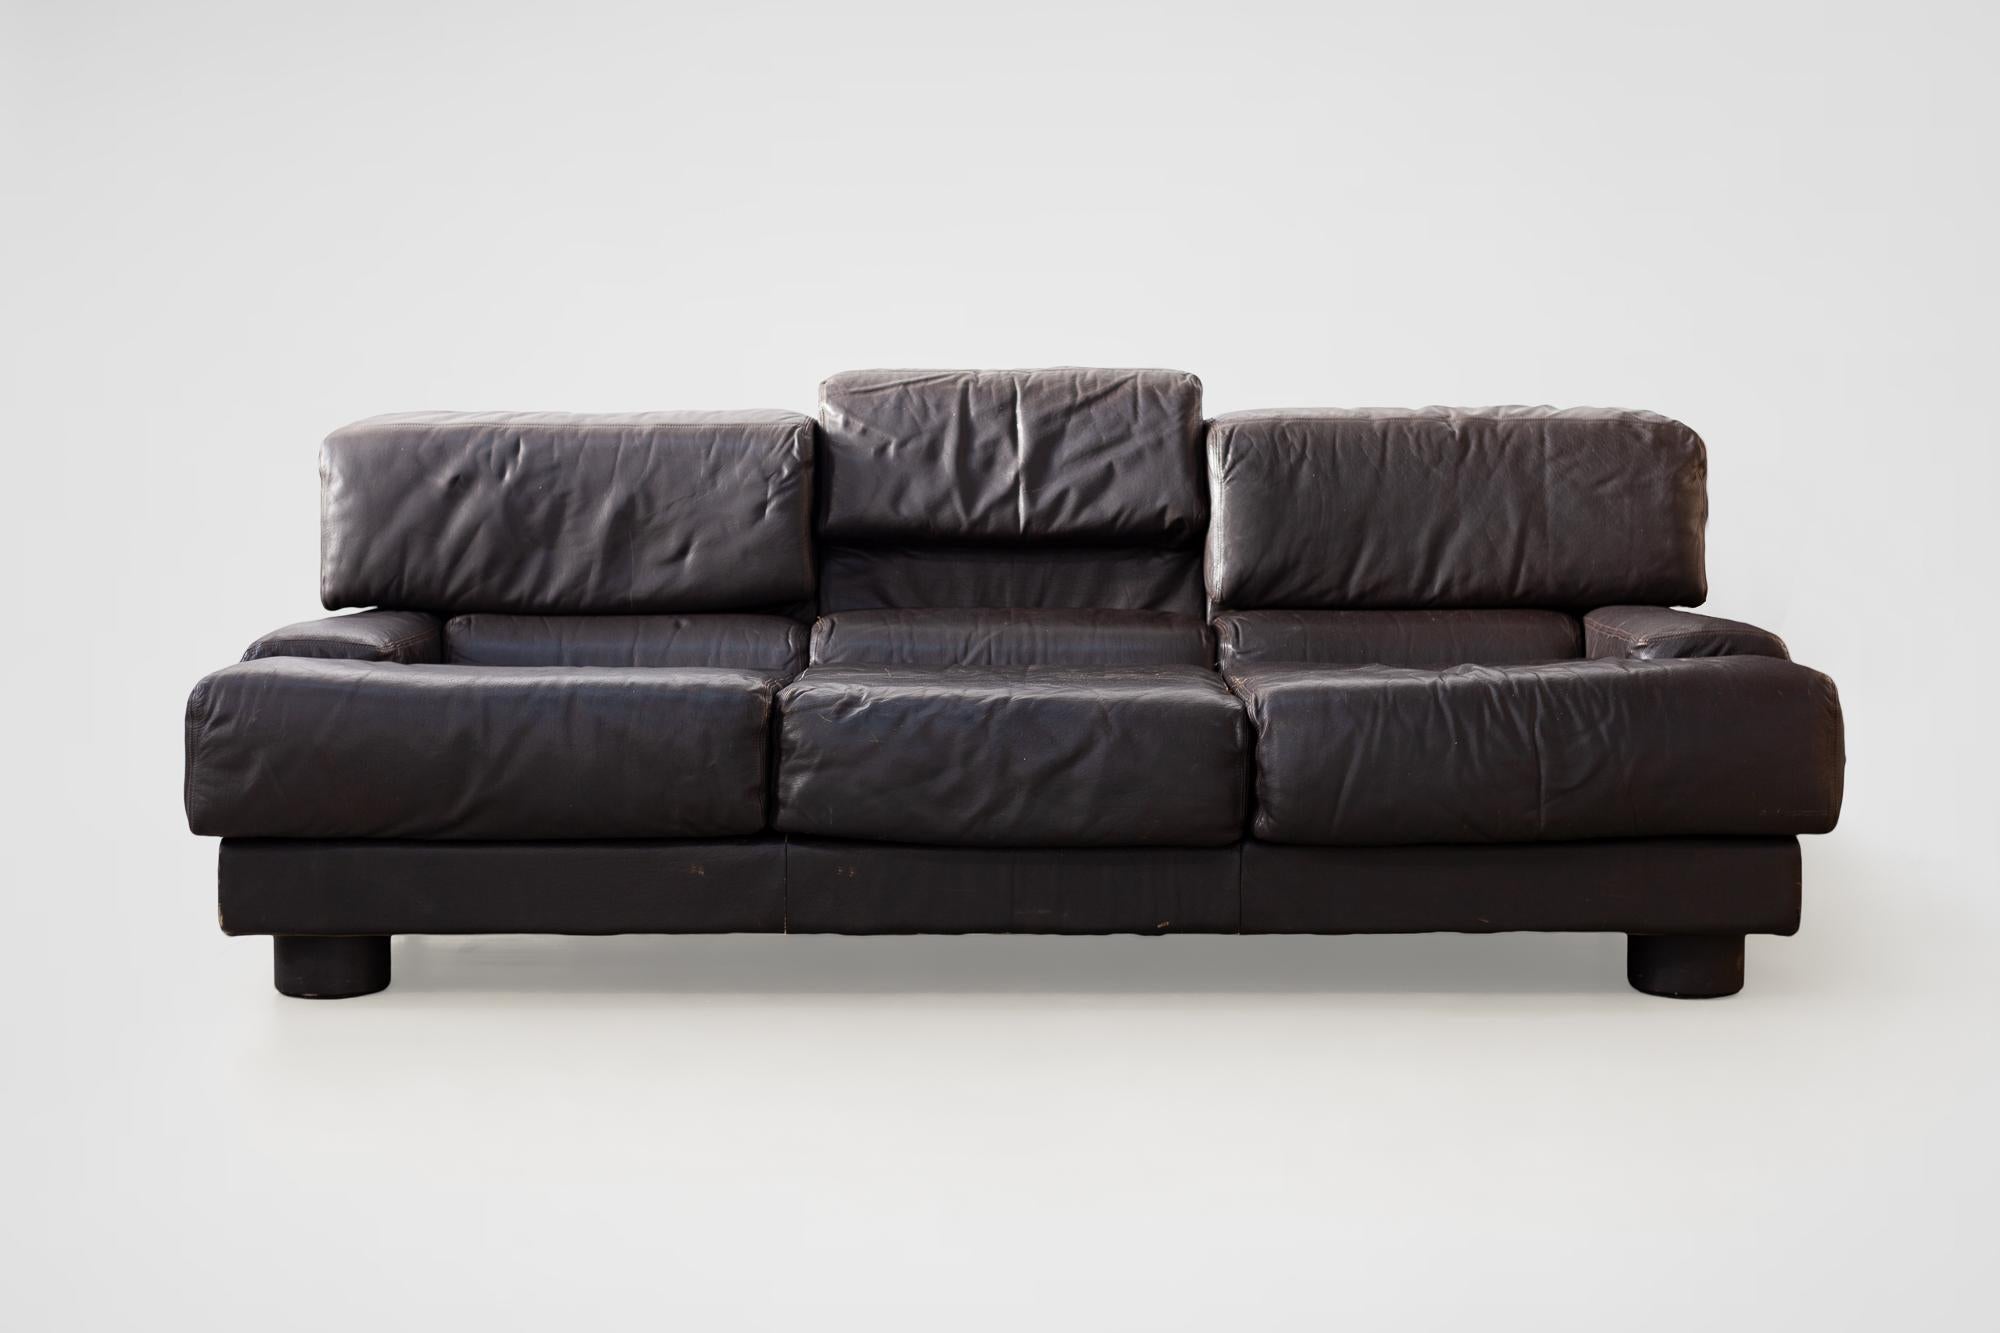 Rare Percival Lafer Sofa in Dark Brown Leather For Sale 9